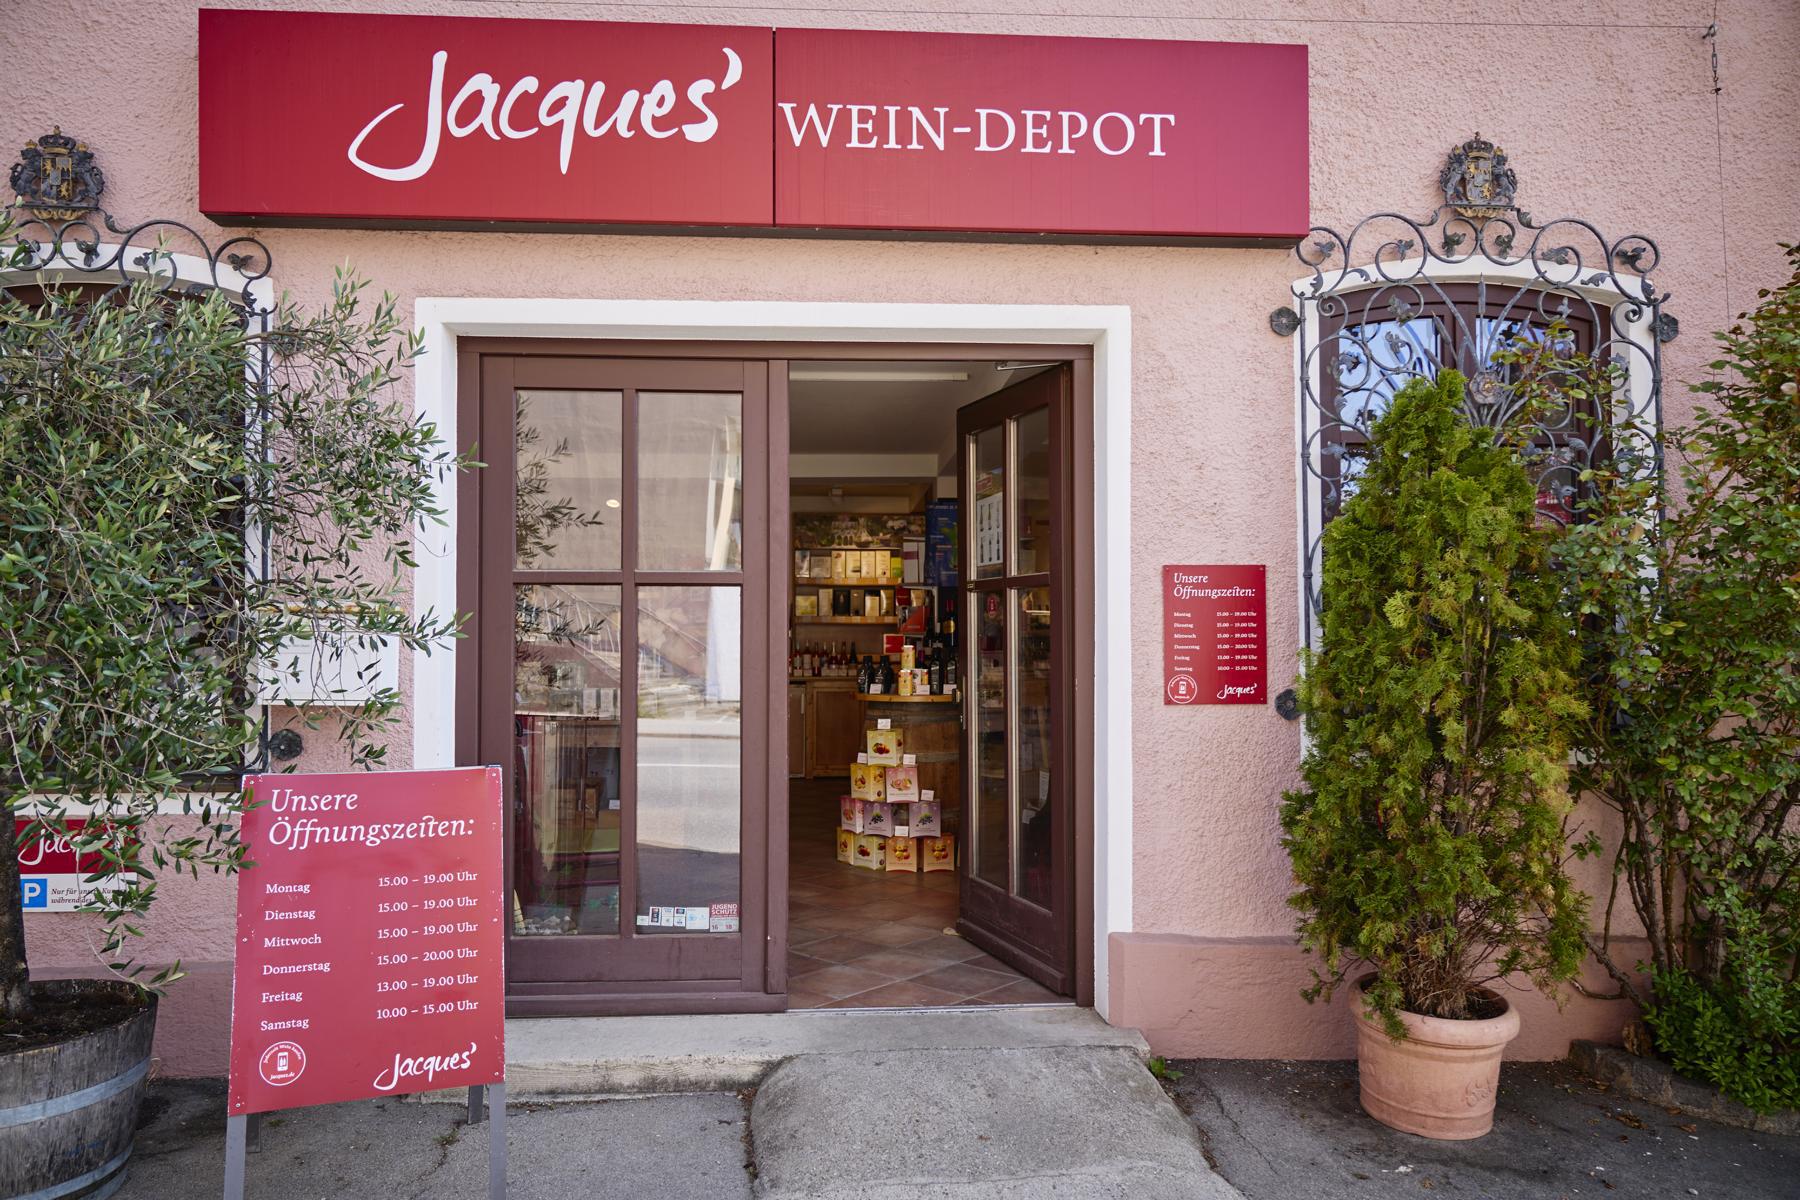 Bild 1 Jacques’ Wein-Depot Starnberg in Starnberg